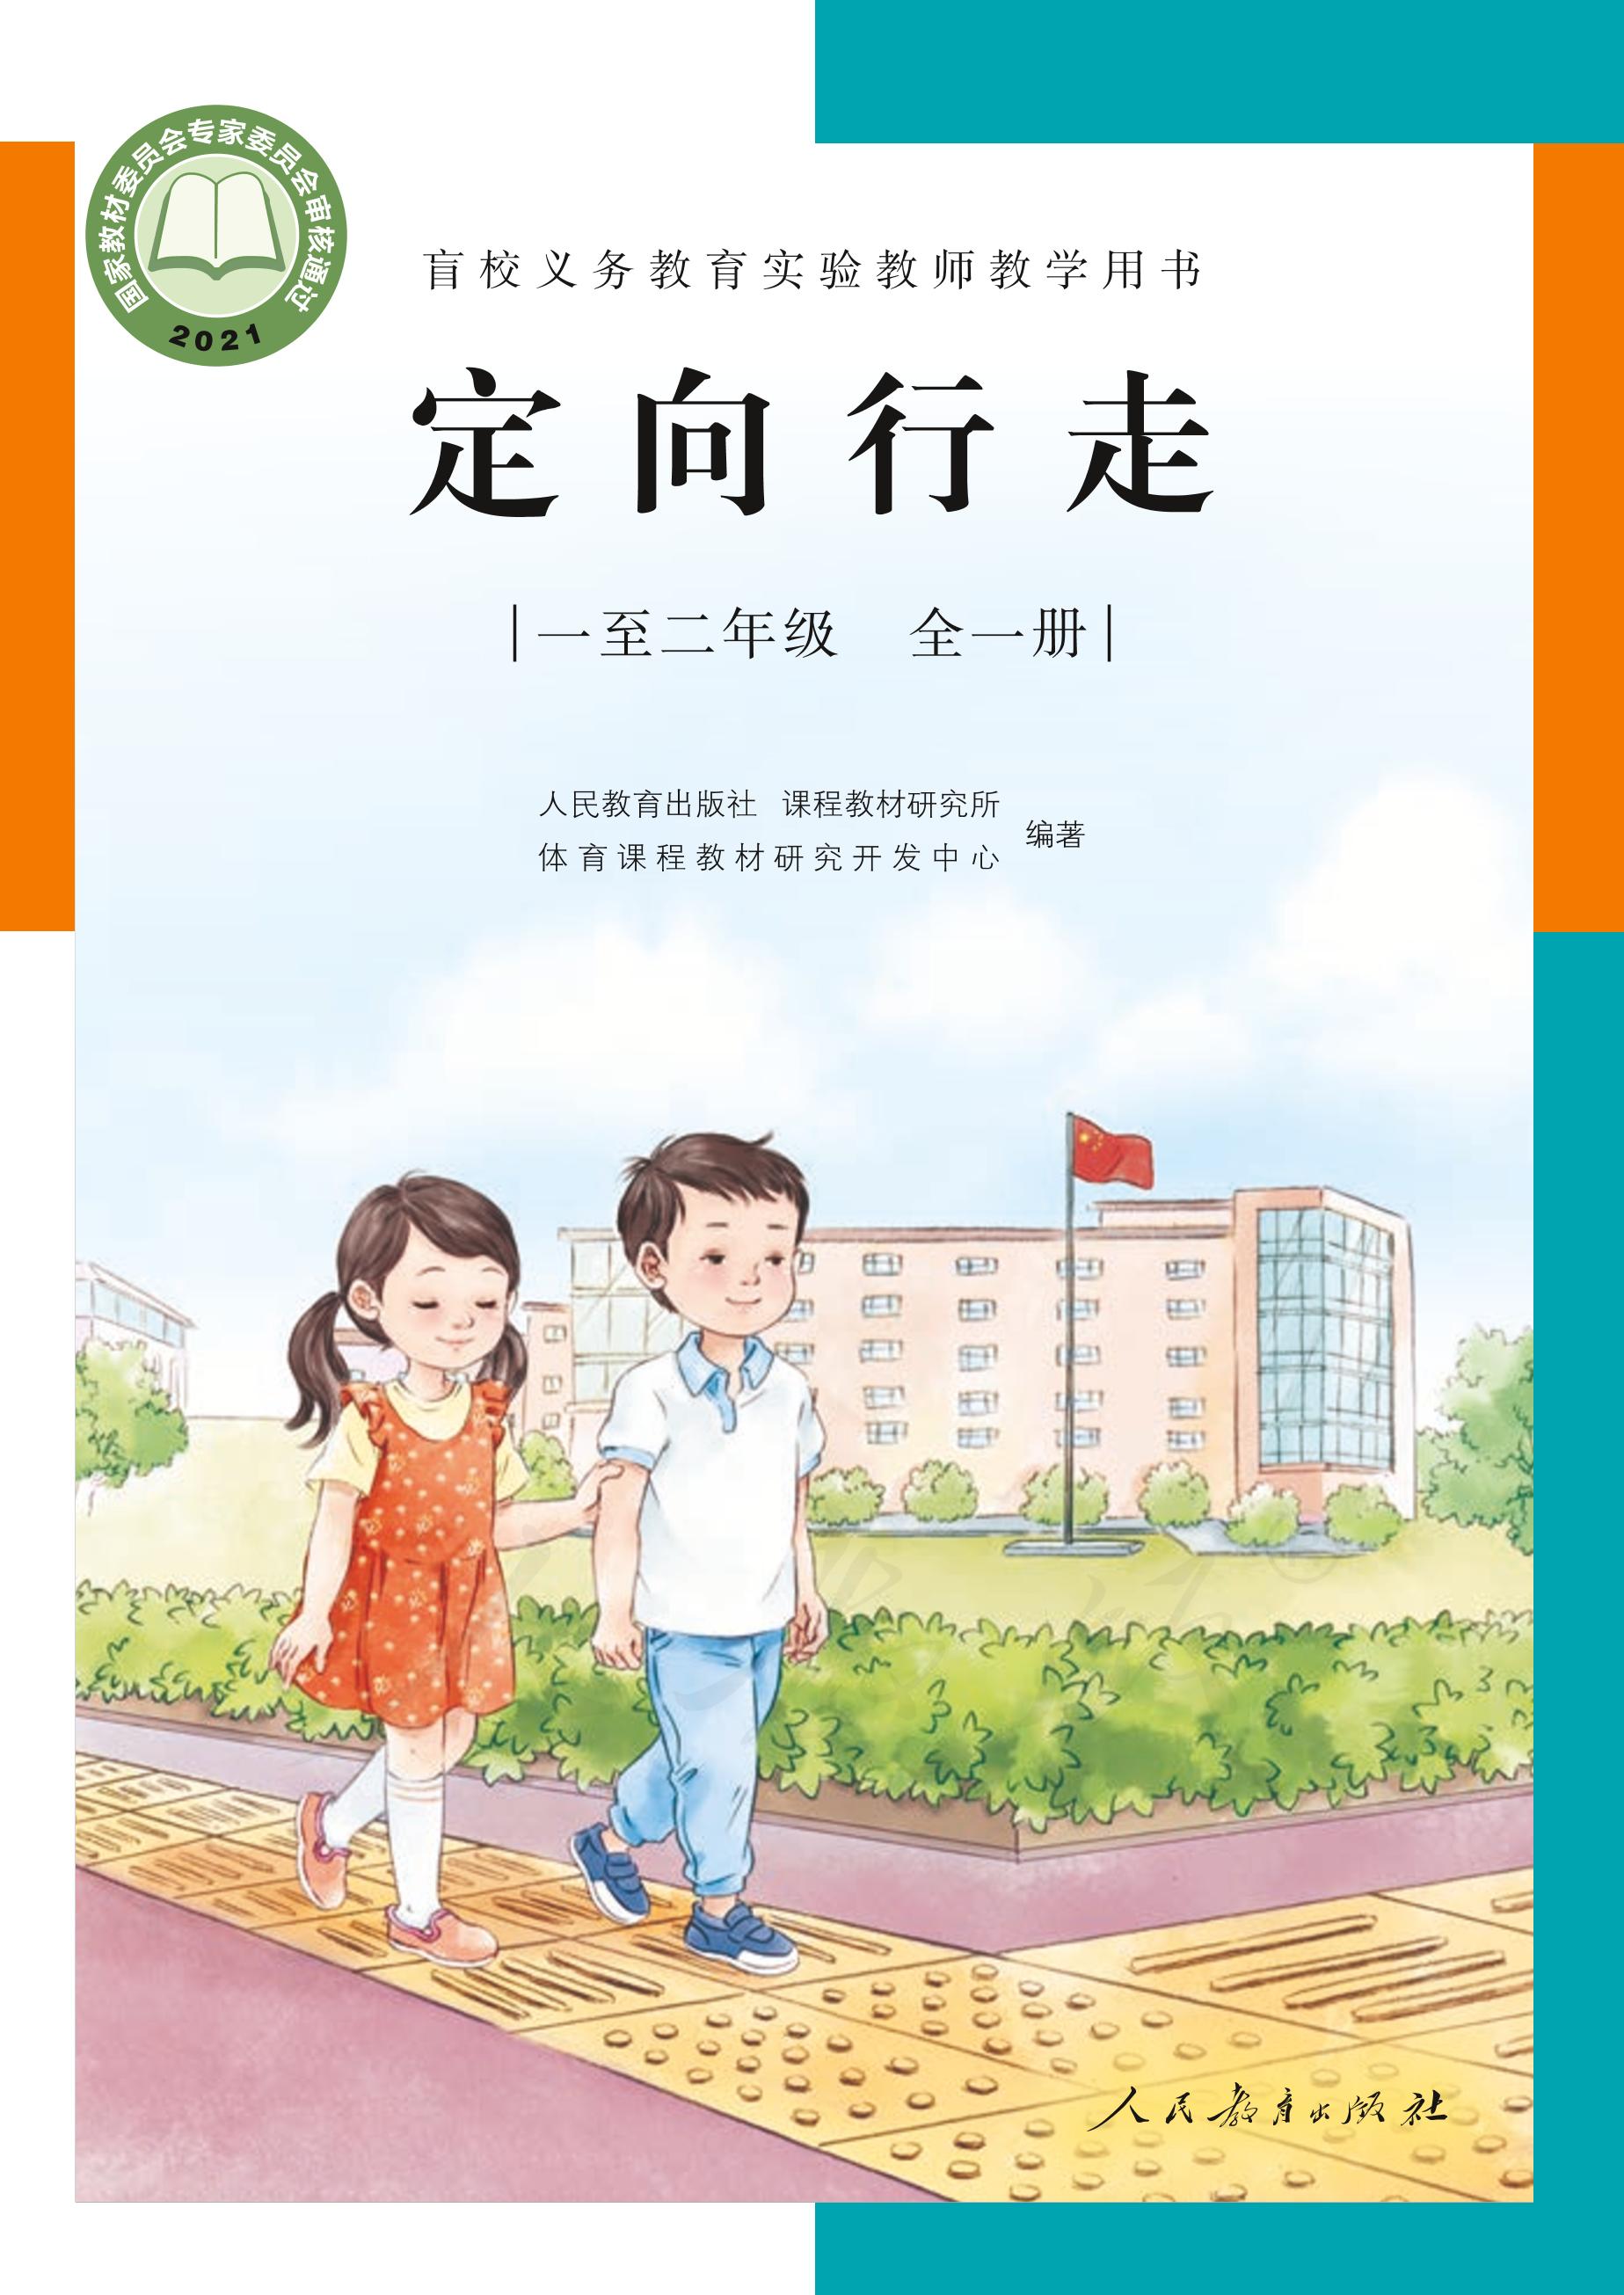 河南省盲人学校、郑州市盲聋哑学校用爱心、细心、热心相迎学生返校--郑州教育信息网